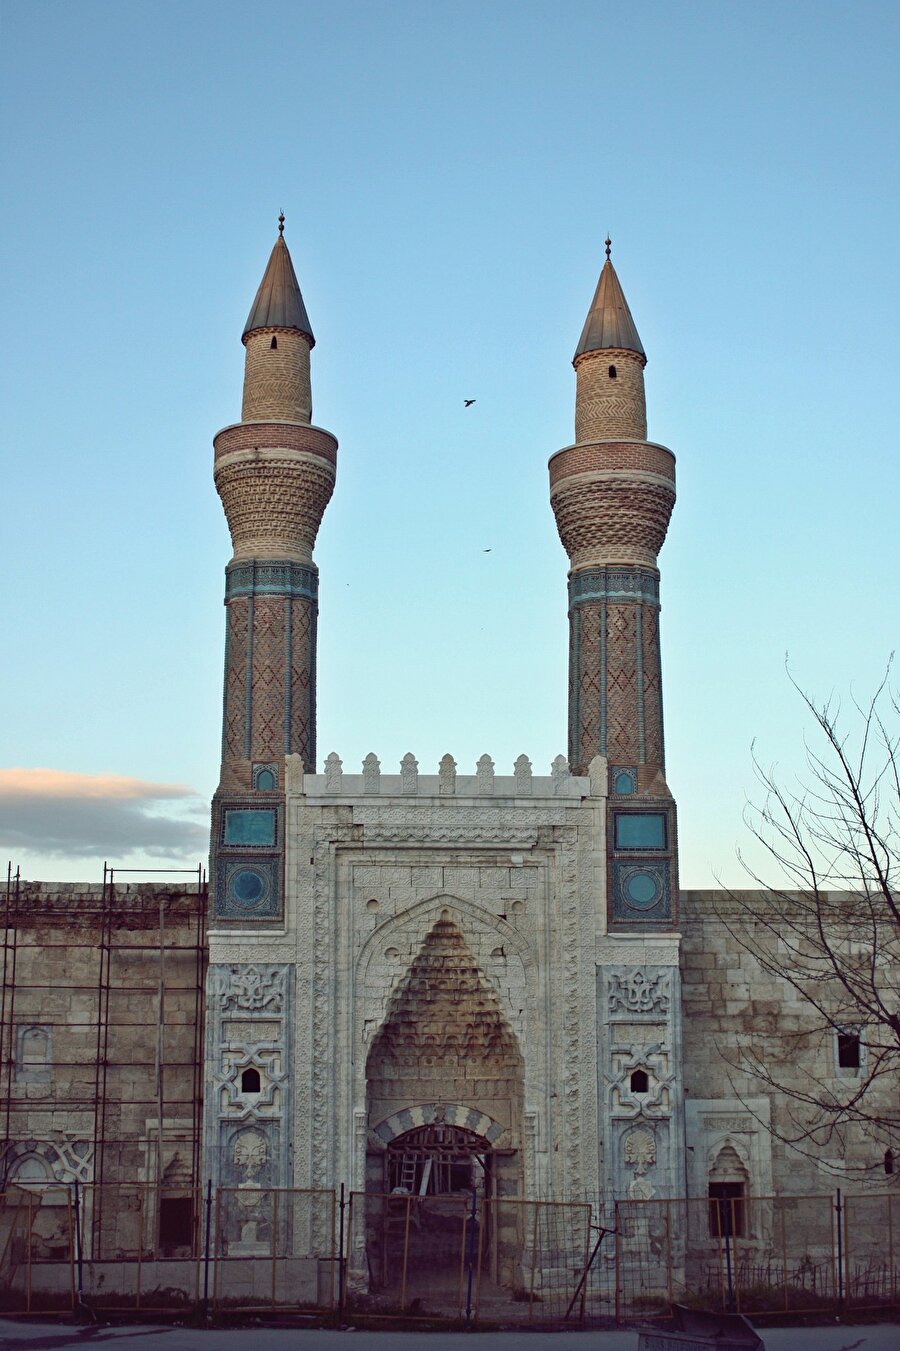 Gök Medrese / Sivas

                                    
                                    
                                    Türk süsleme sanatının en güzel örnekleri arasında yer alan ve 800 yıllık bir zaman dilimine şahitlik eden Çifte Minareli Medrese ve Gök Medrese ziyaretçilerini bekliyor.
                                
                                
                                